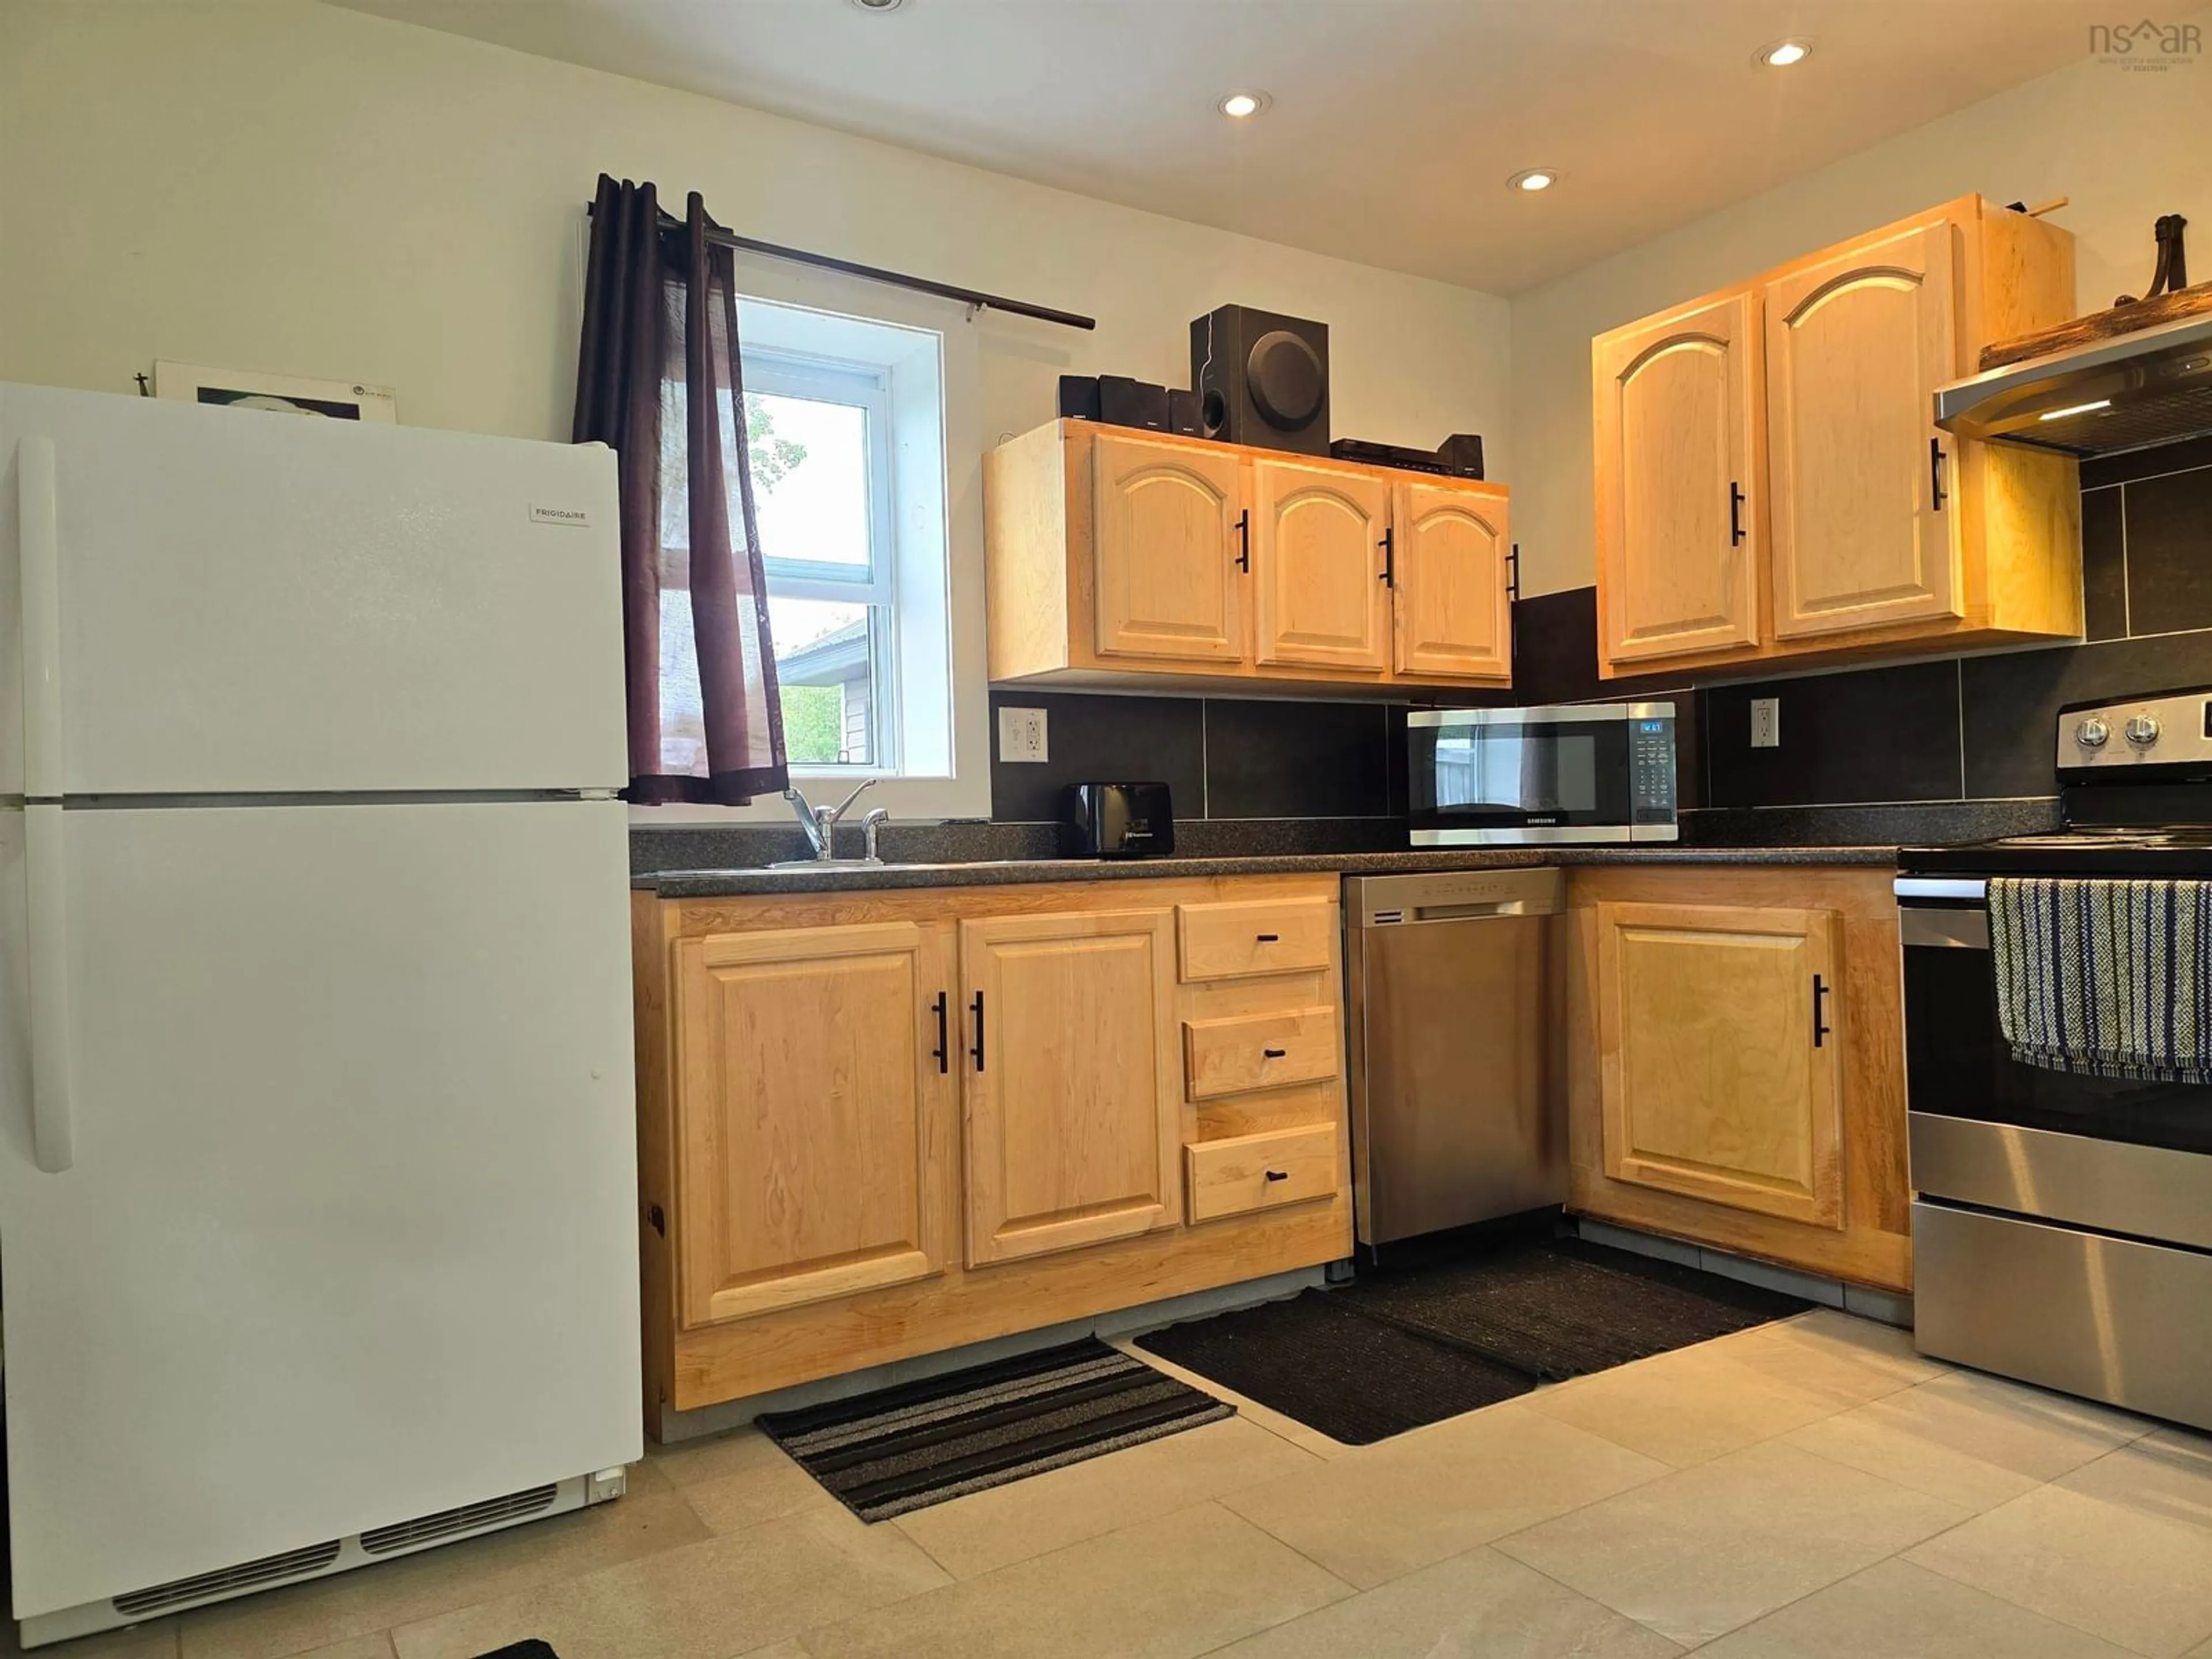 Standard kitchen for 20 North Ave, New Glasgow Nova Scotia B2H 2E2